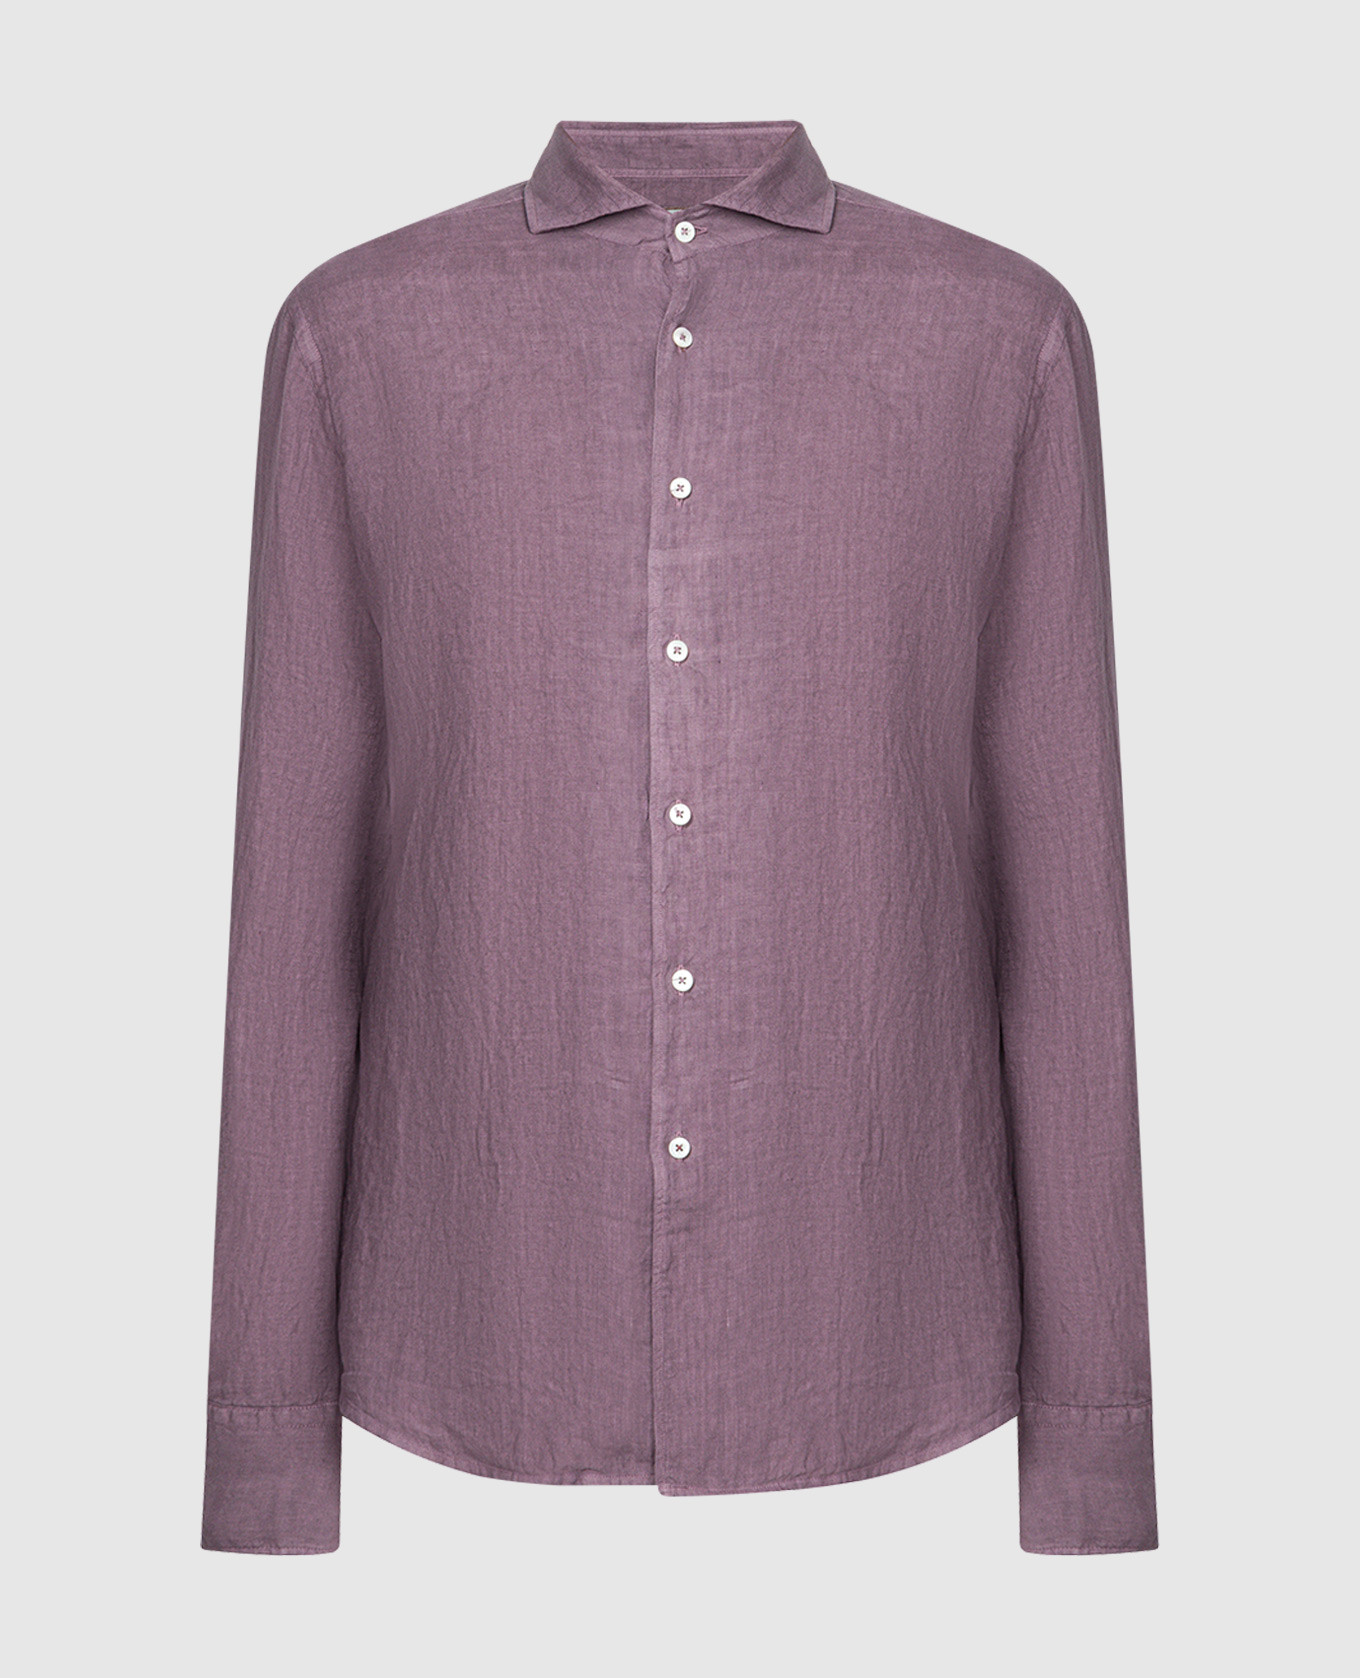 Фиолетовая рубашка прямого кроя из льна.